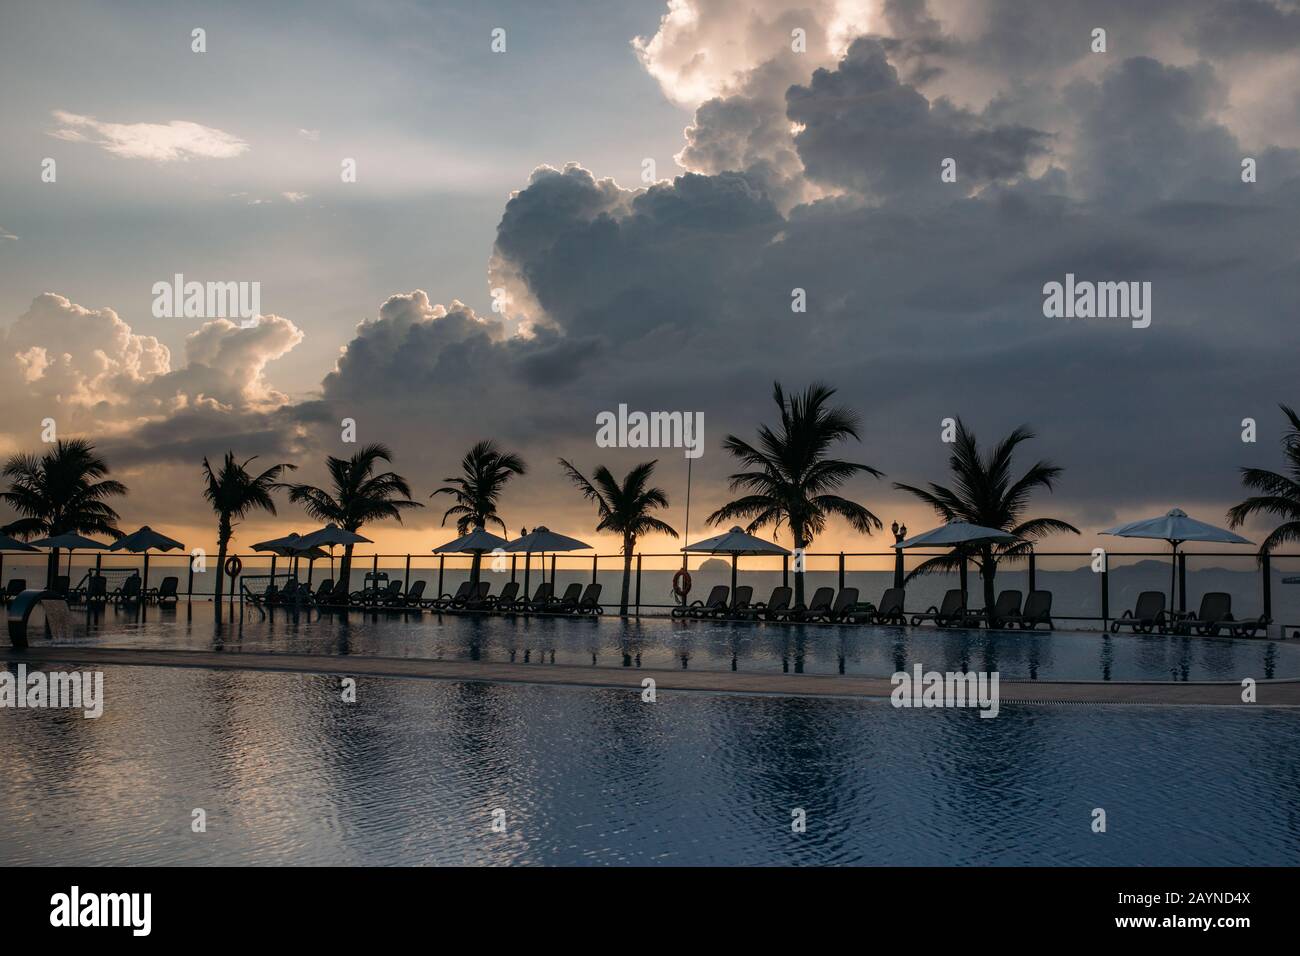 Piscina, palme intorno, riflessione di palme in piscina, alba con un bel cielo nuvoloso. Un'area vuota con molti lettini, il pas del sole Foto Stock